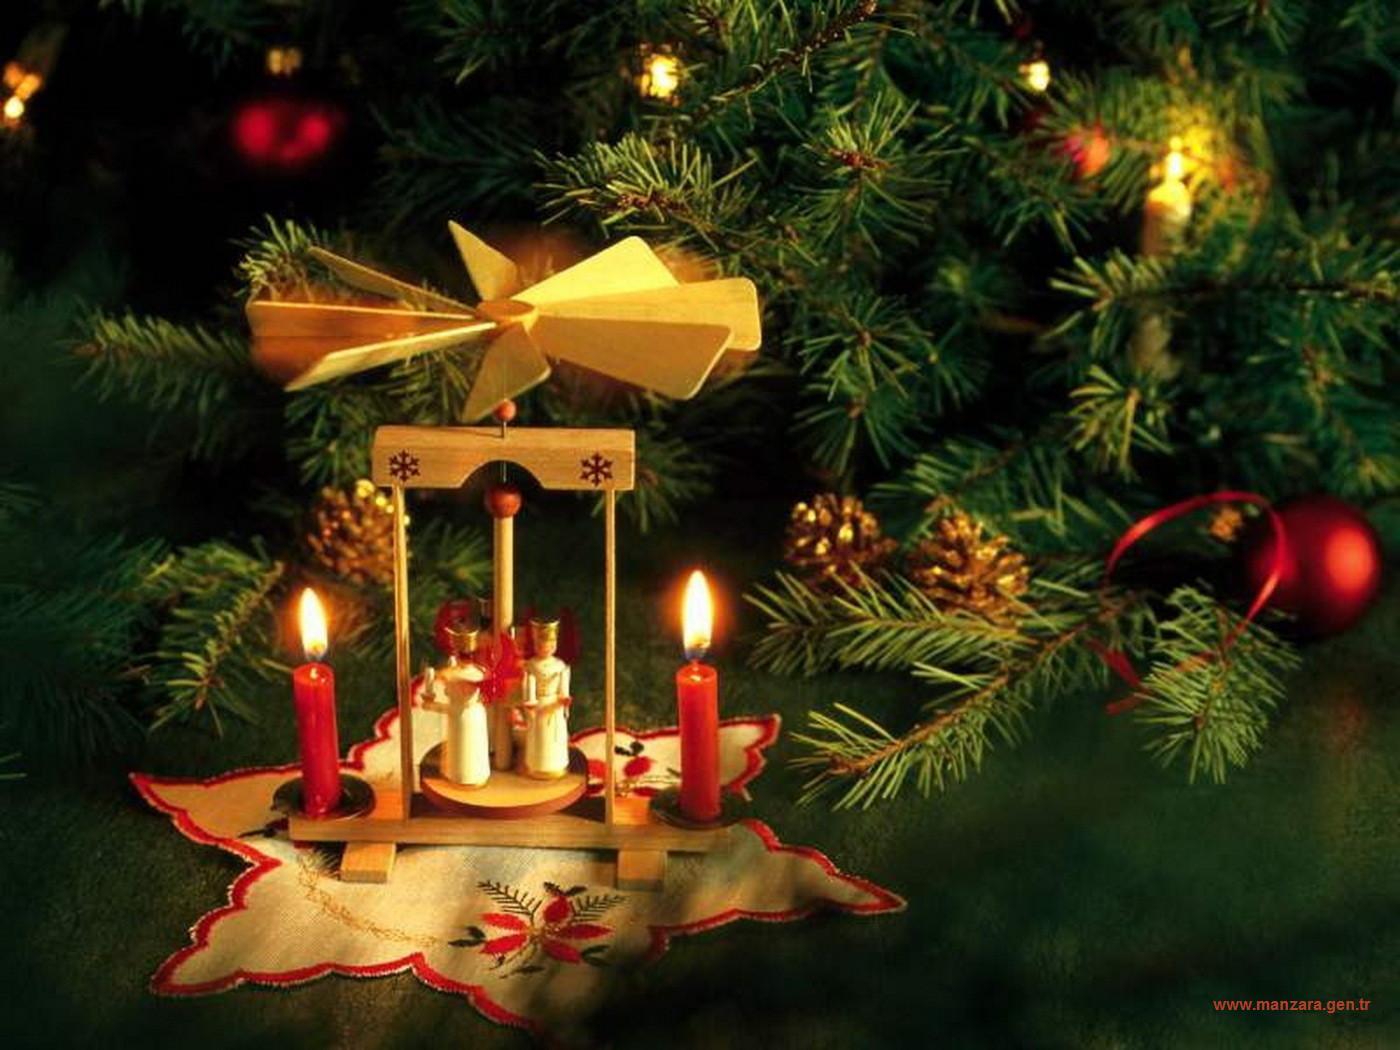 25 декабря 7 января. Рождество. С Рождеством Христовым католическим. Открытки с Рождеством католическим. Новый год и Рождество Христово.